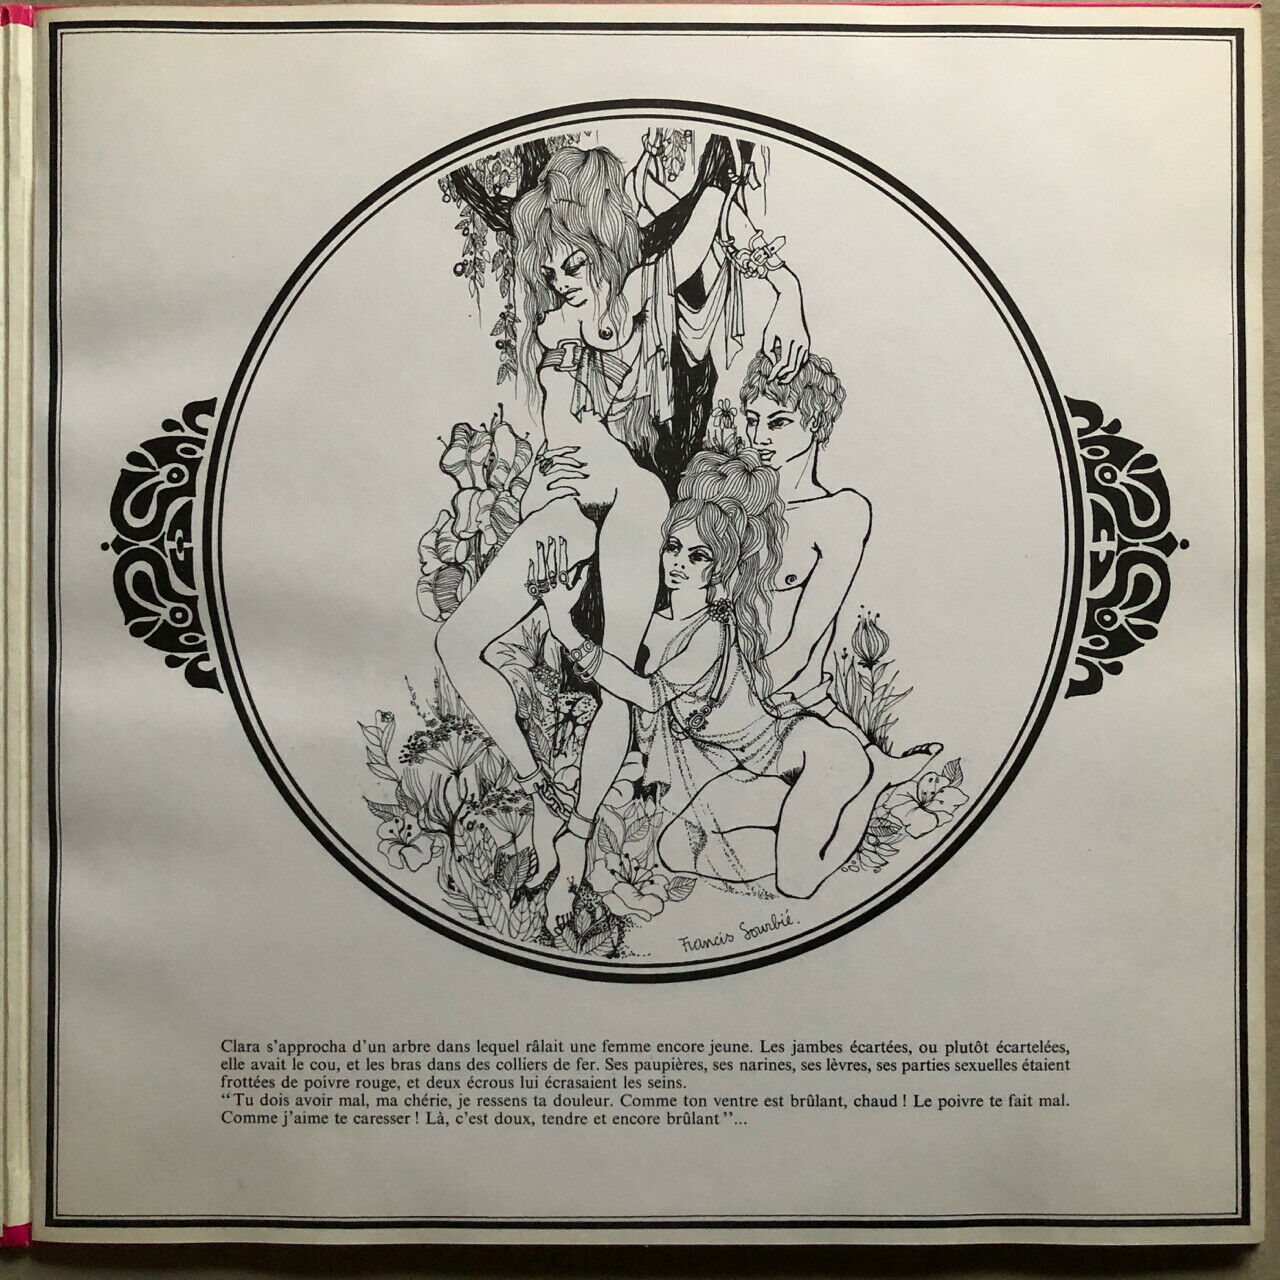 Cruel love through the centuries — The Furry Venus + 3 — 4 LPs 1970's